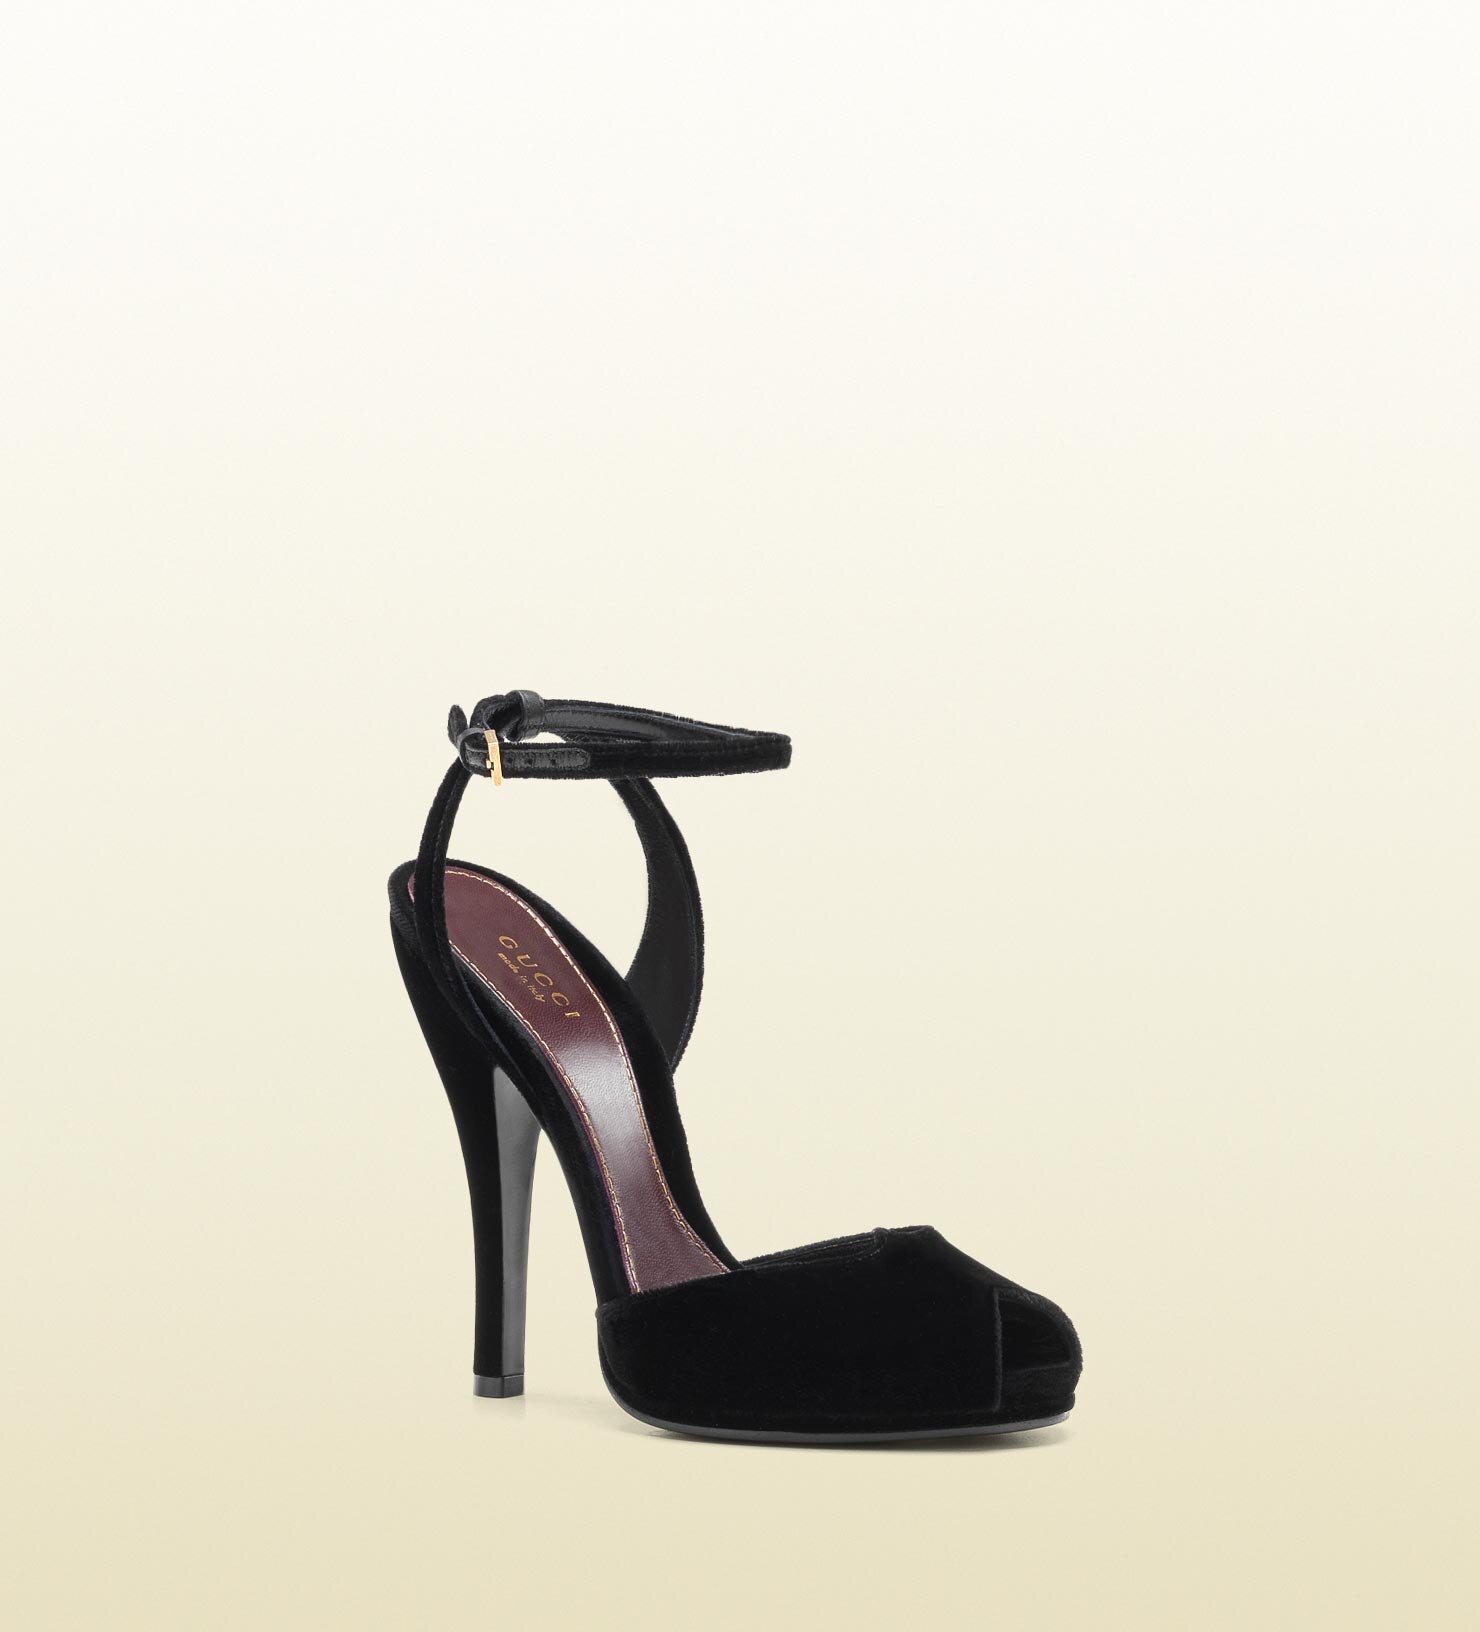 Gucci Rose Open-Toe High Heel Velvet Sandals in Black.jpg